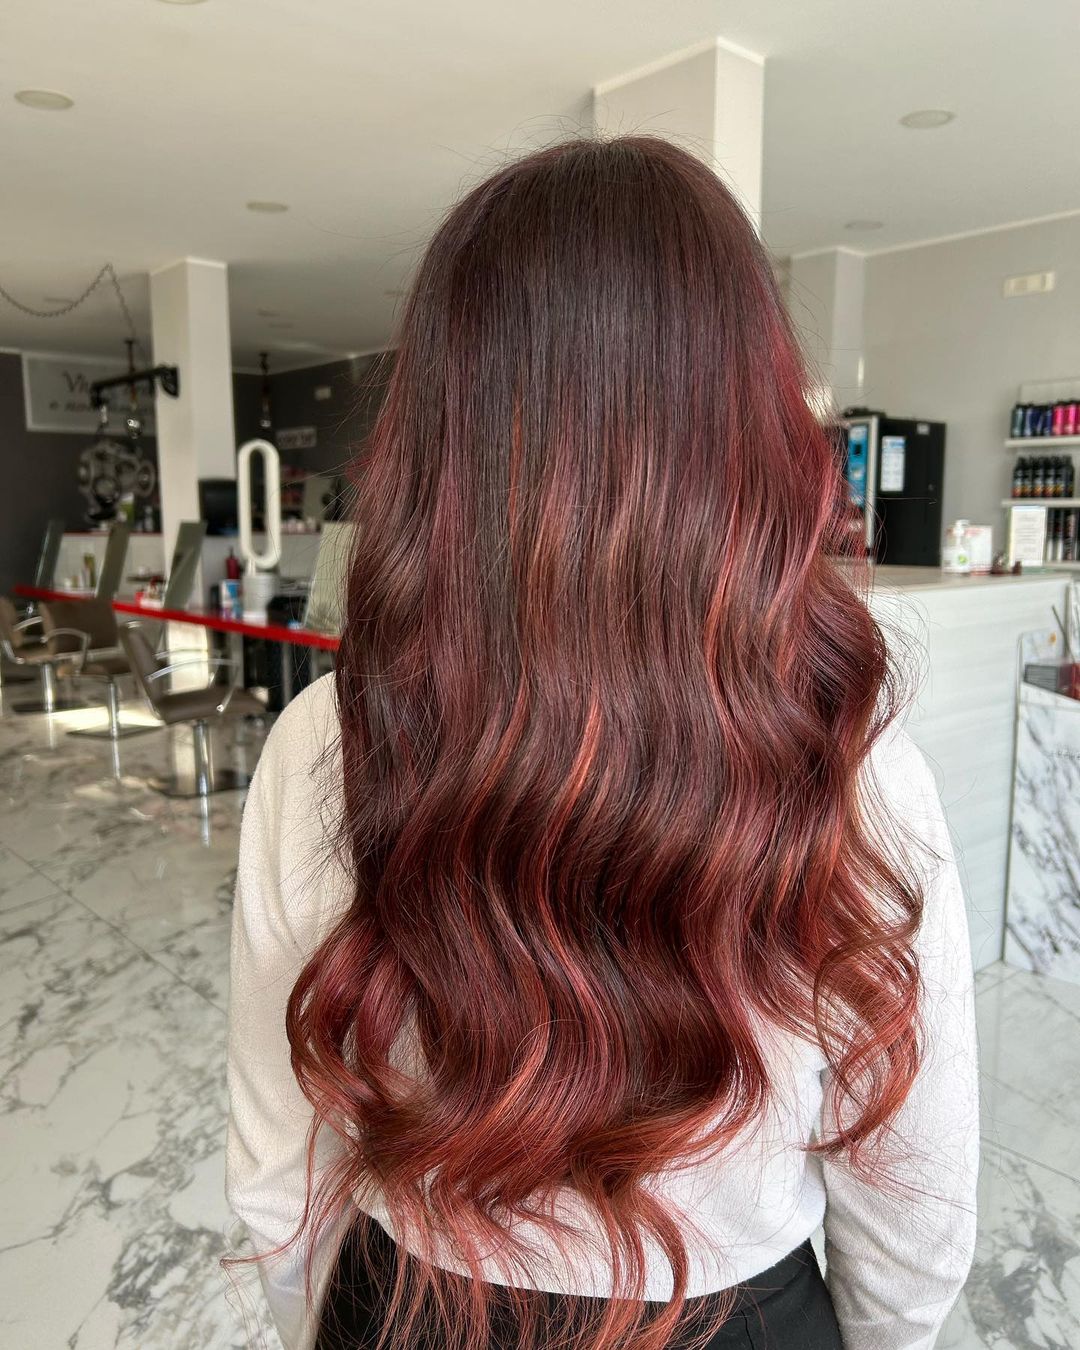 Capelli lunghi rosso ciliegia - Instagram: @sensation_di_matteo_team